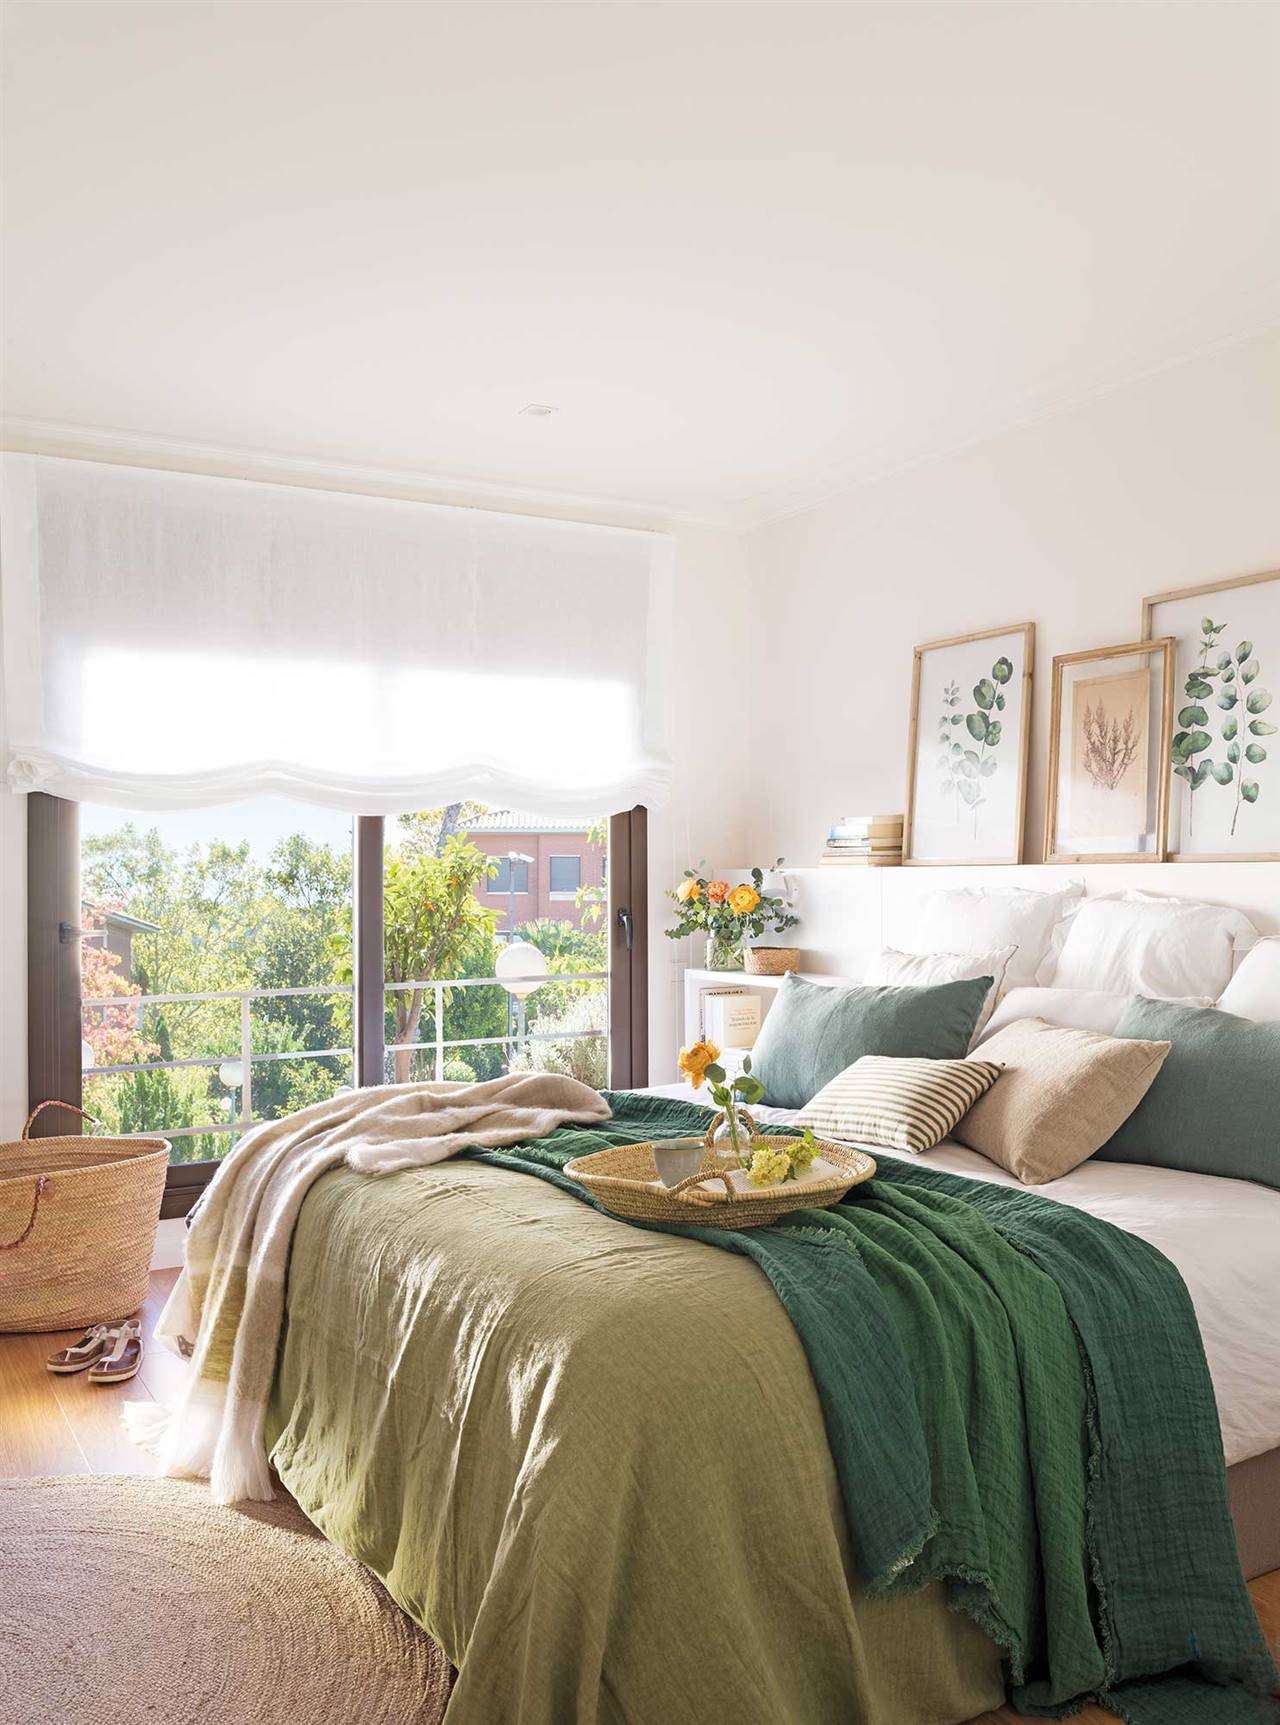 Surgir Cenagal Árbol genealógico Parejas jóvenes: 10 ideas para decorar el dormitorio y darle un look 'cozy'